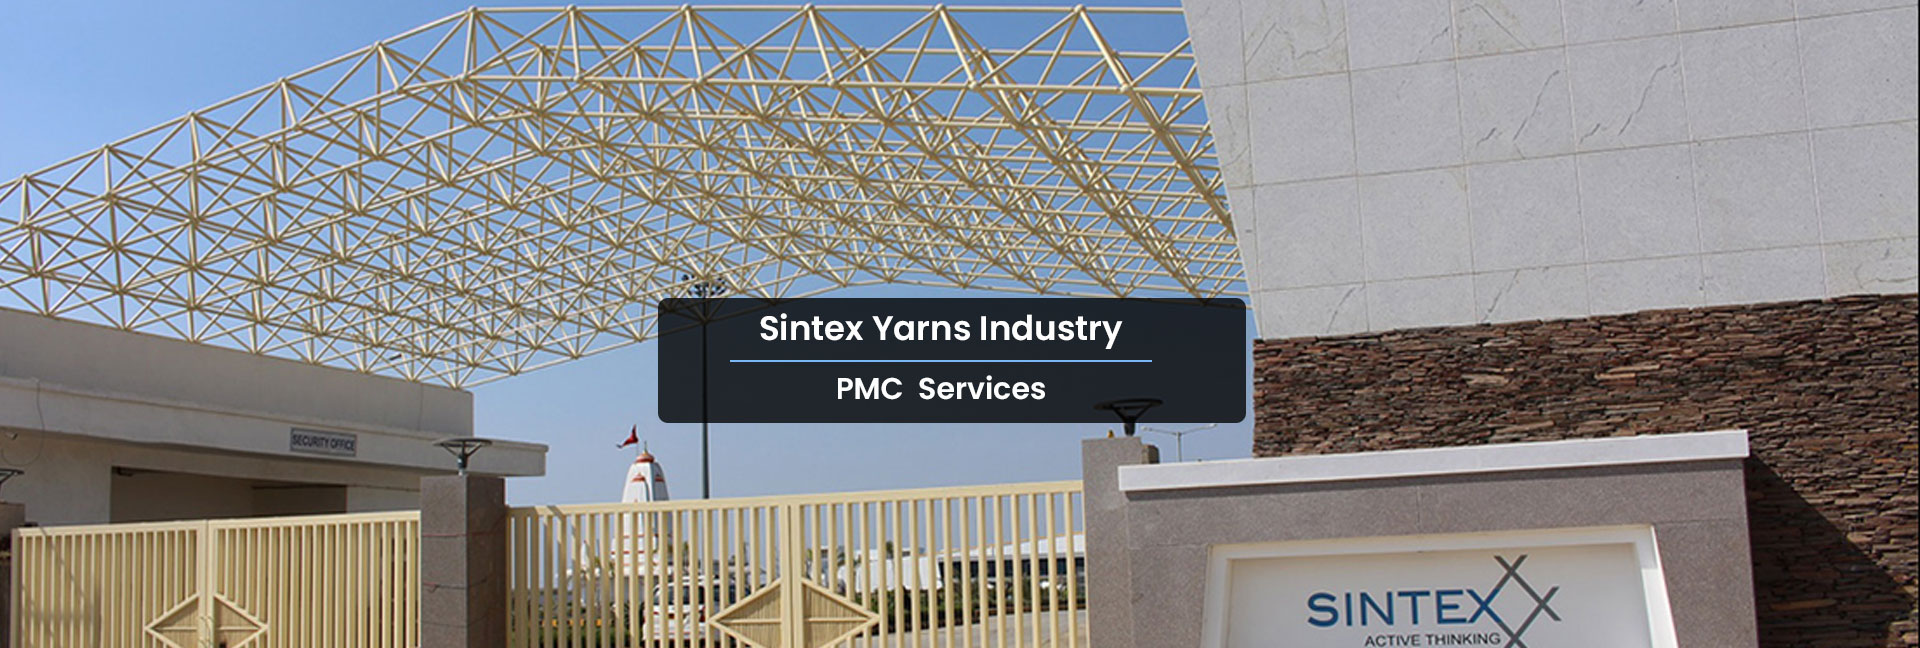 PMC-Sintex Yarns Industry Rajula 